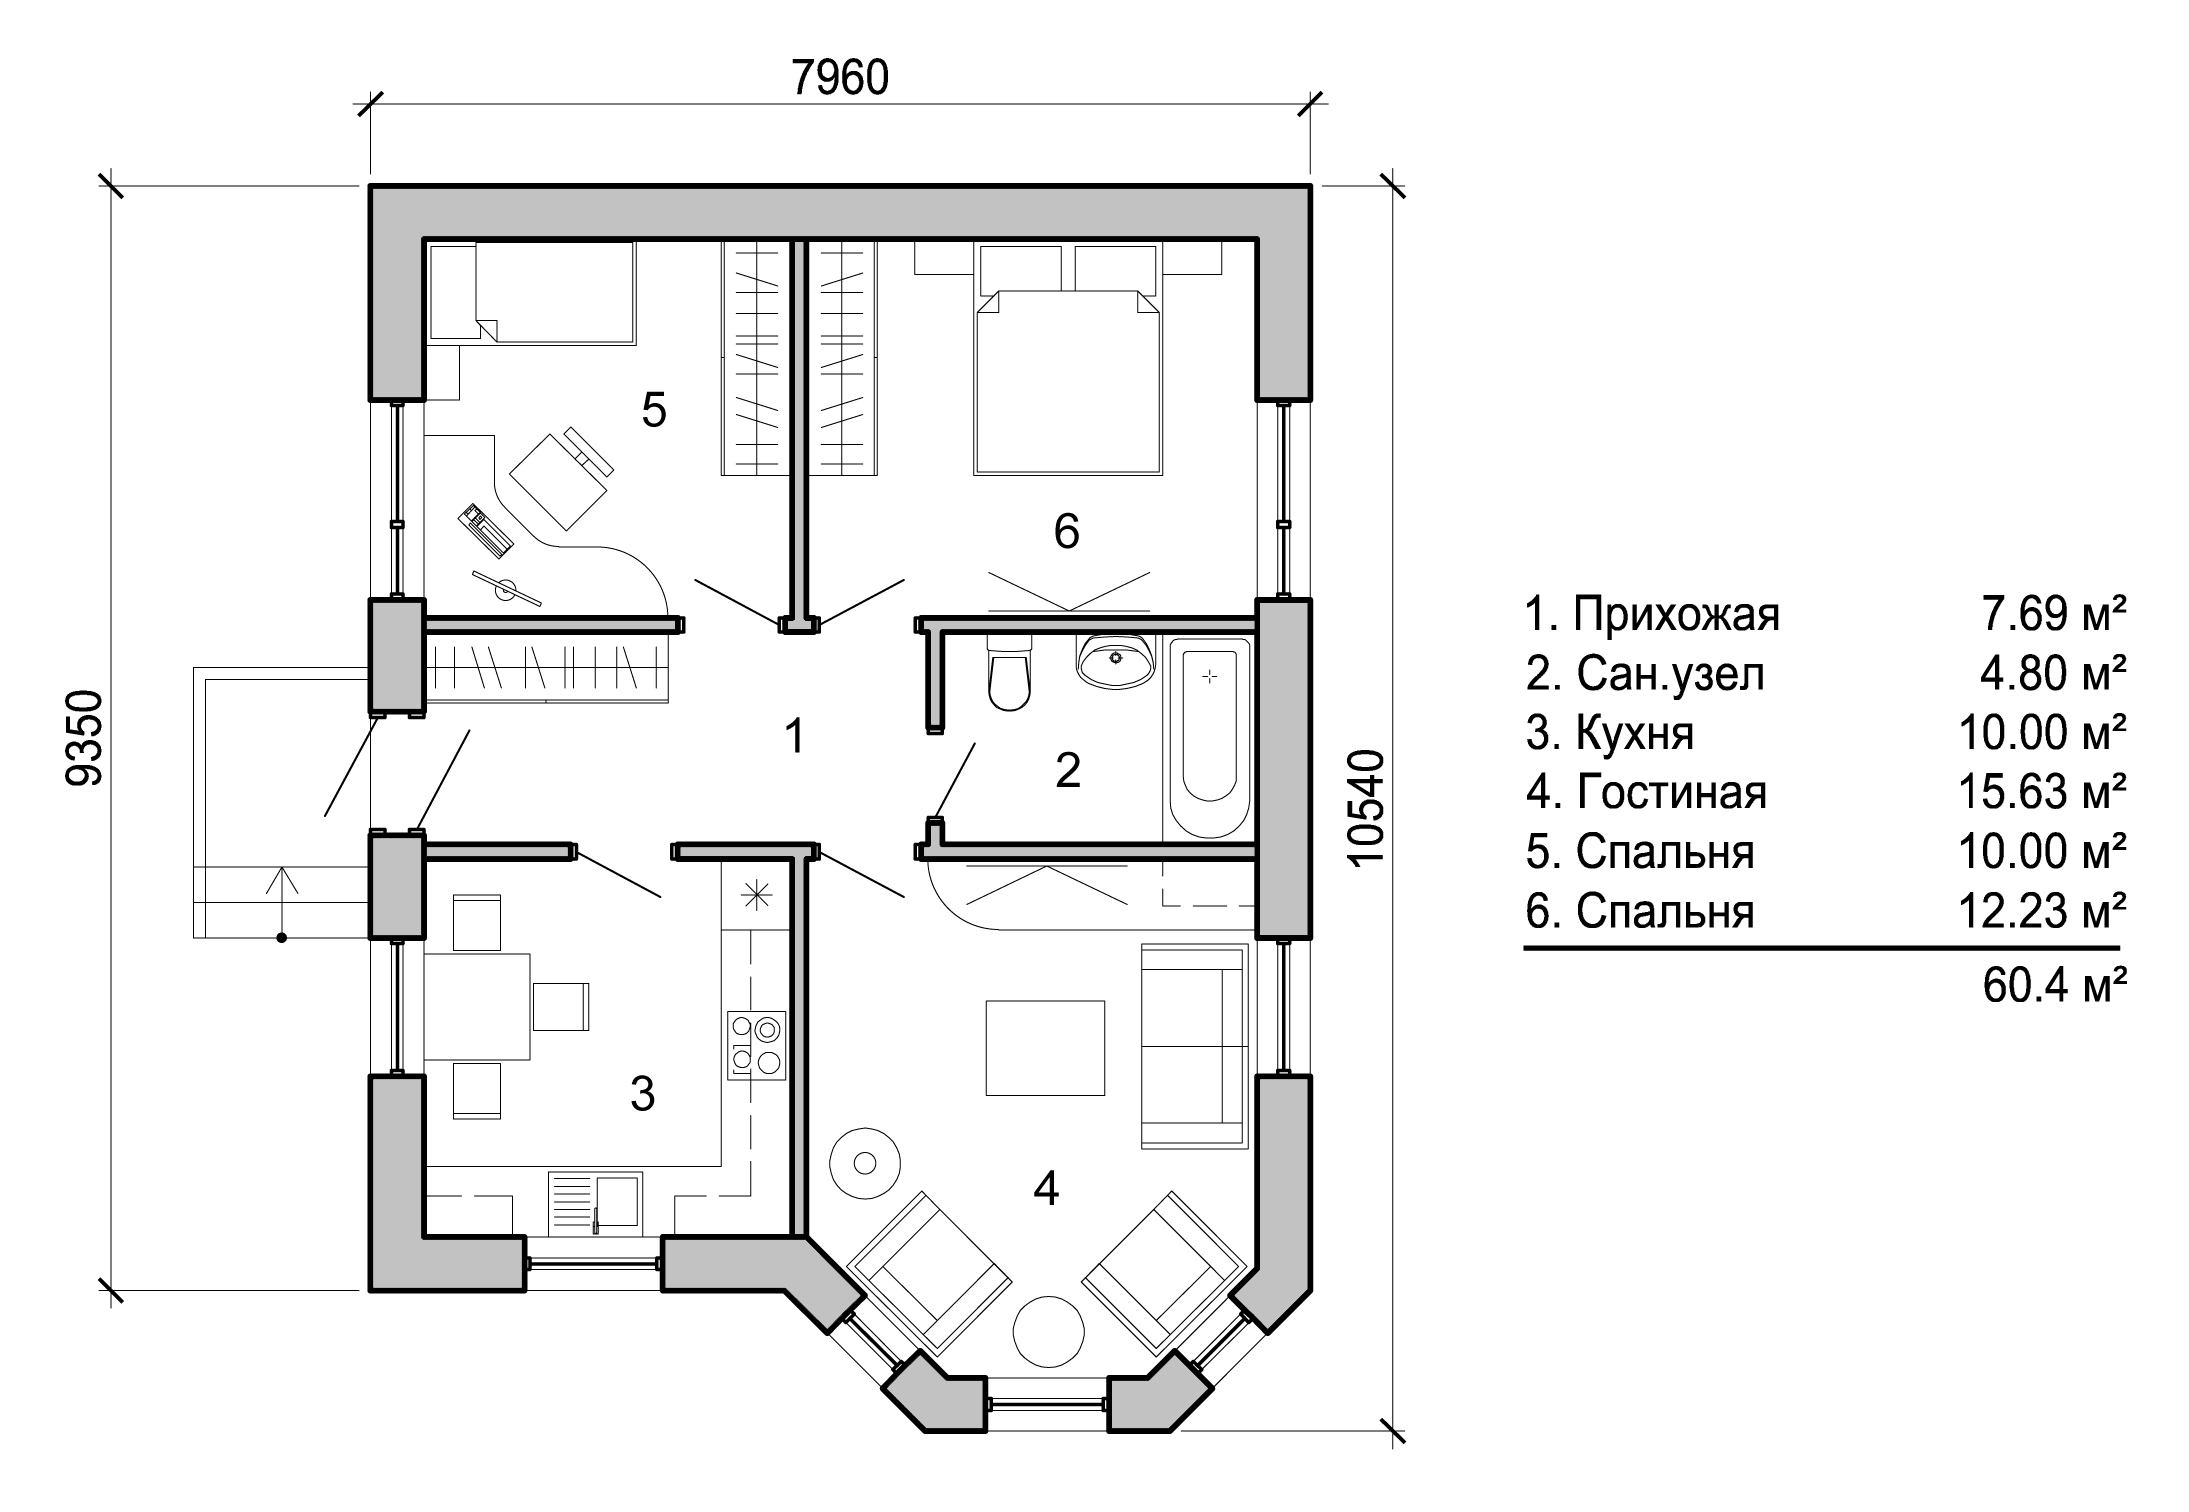 Дом 60 м2 одноэтажный планировка 2 спальни